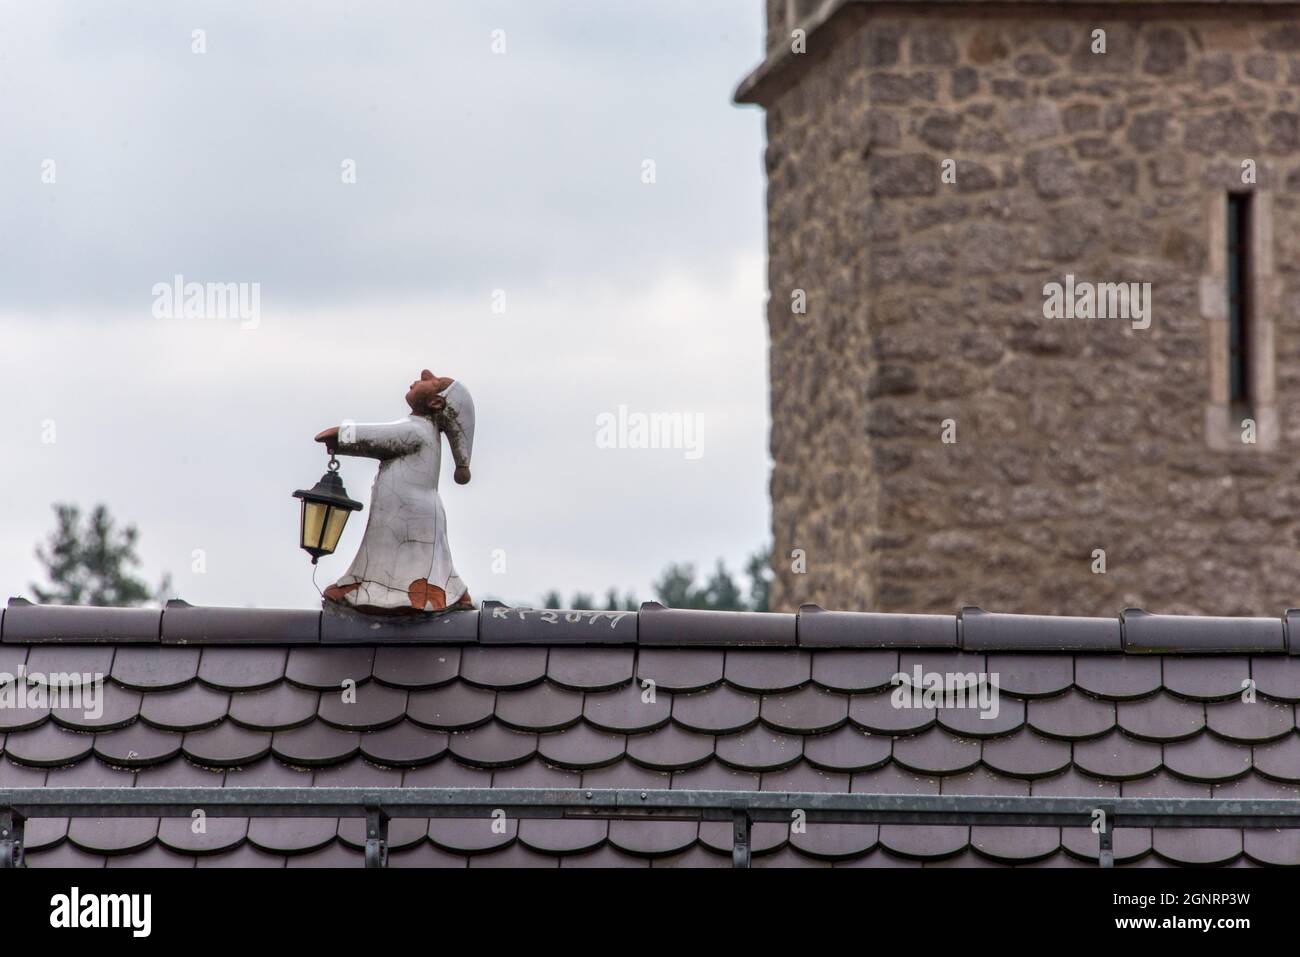 Ein Kunstwerk mit Augenzwinkern: Ein kleiner Schlafwandler auf dem Dachfirst - arte con un guiño del ojo: Un pequeño durmiente a lo largo de la cresta del techo. Foto de stock